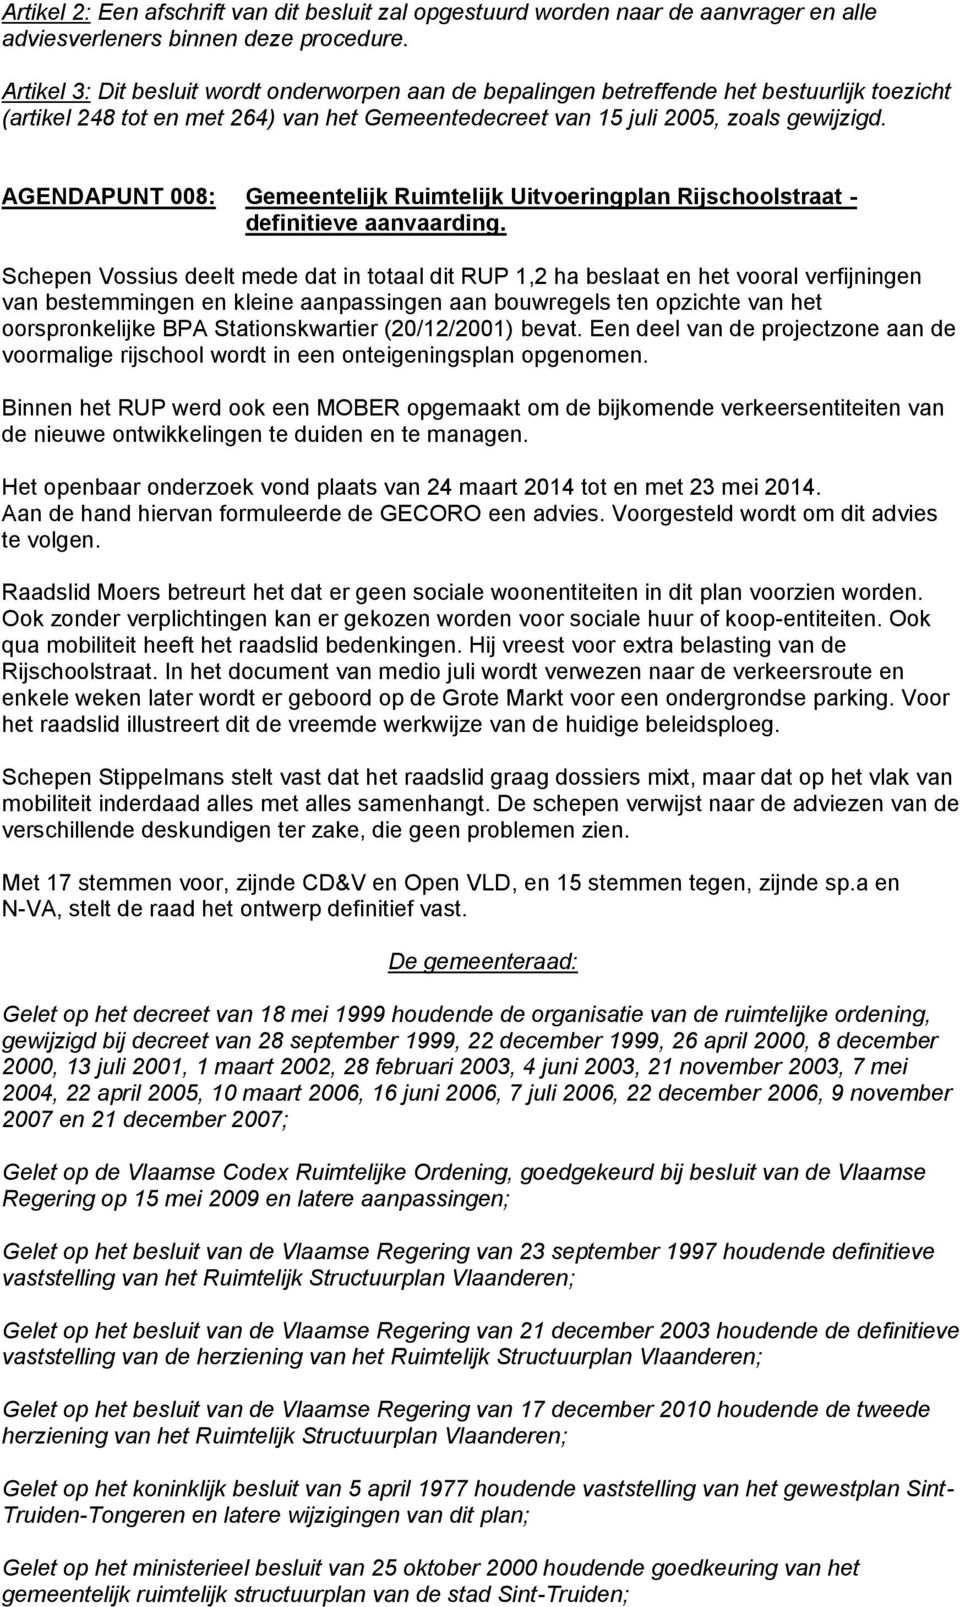 AGENDAPUNT 008: Gemeentelijk Ruimtelijk Uitvoeringplan Rijschoolstraat - definitieve aanvaarding.